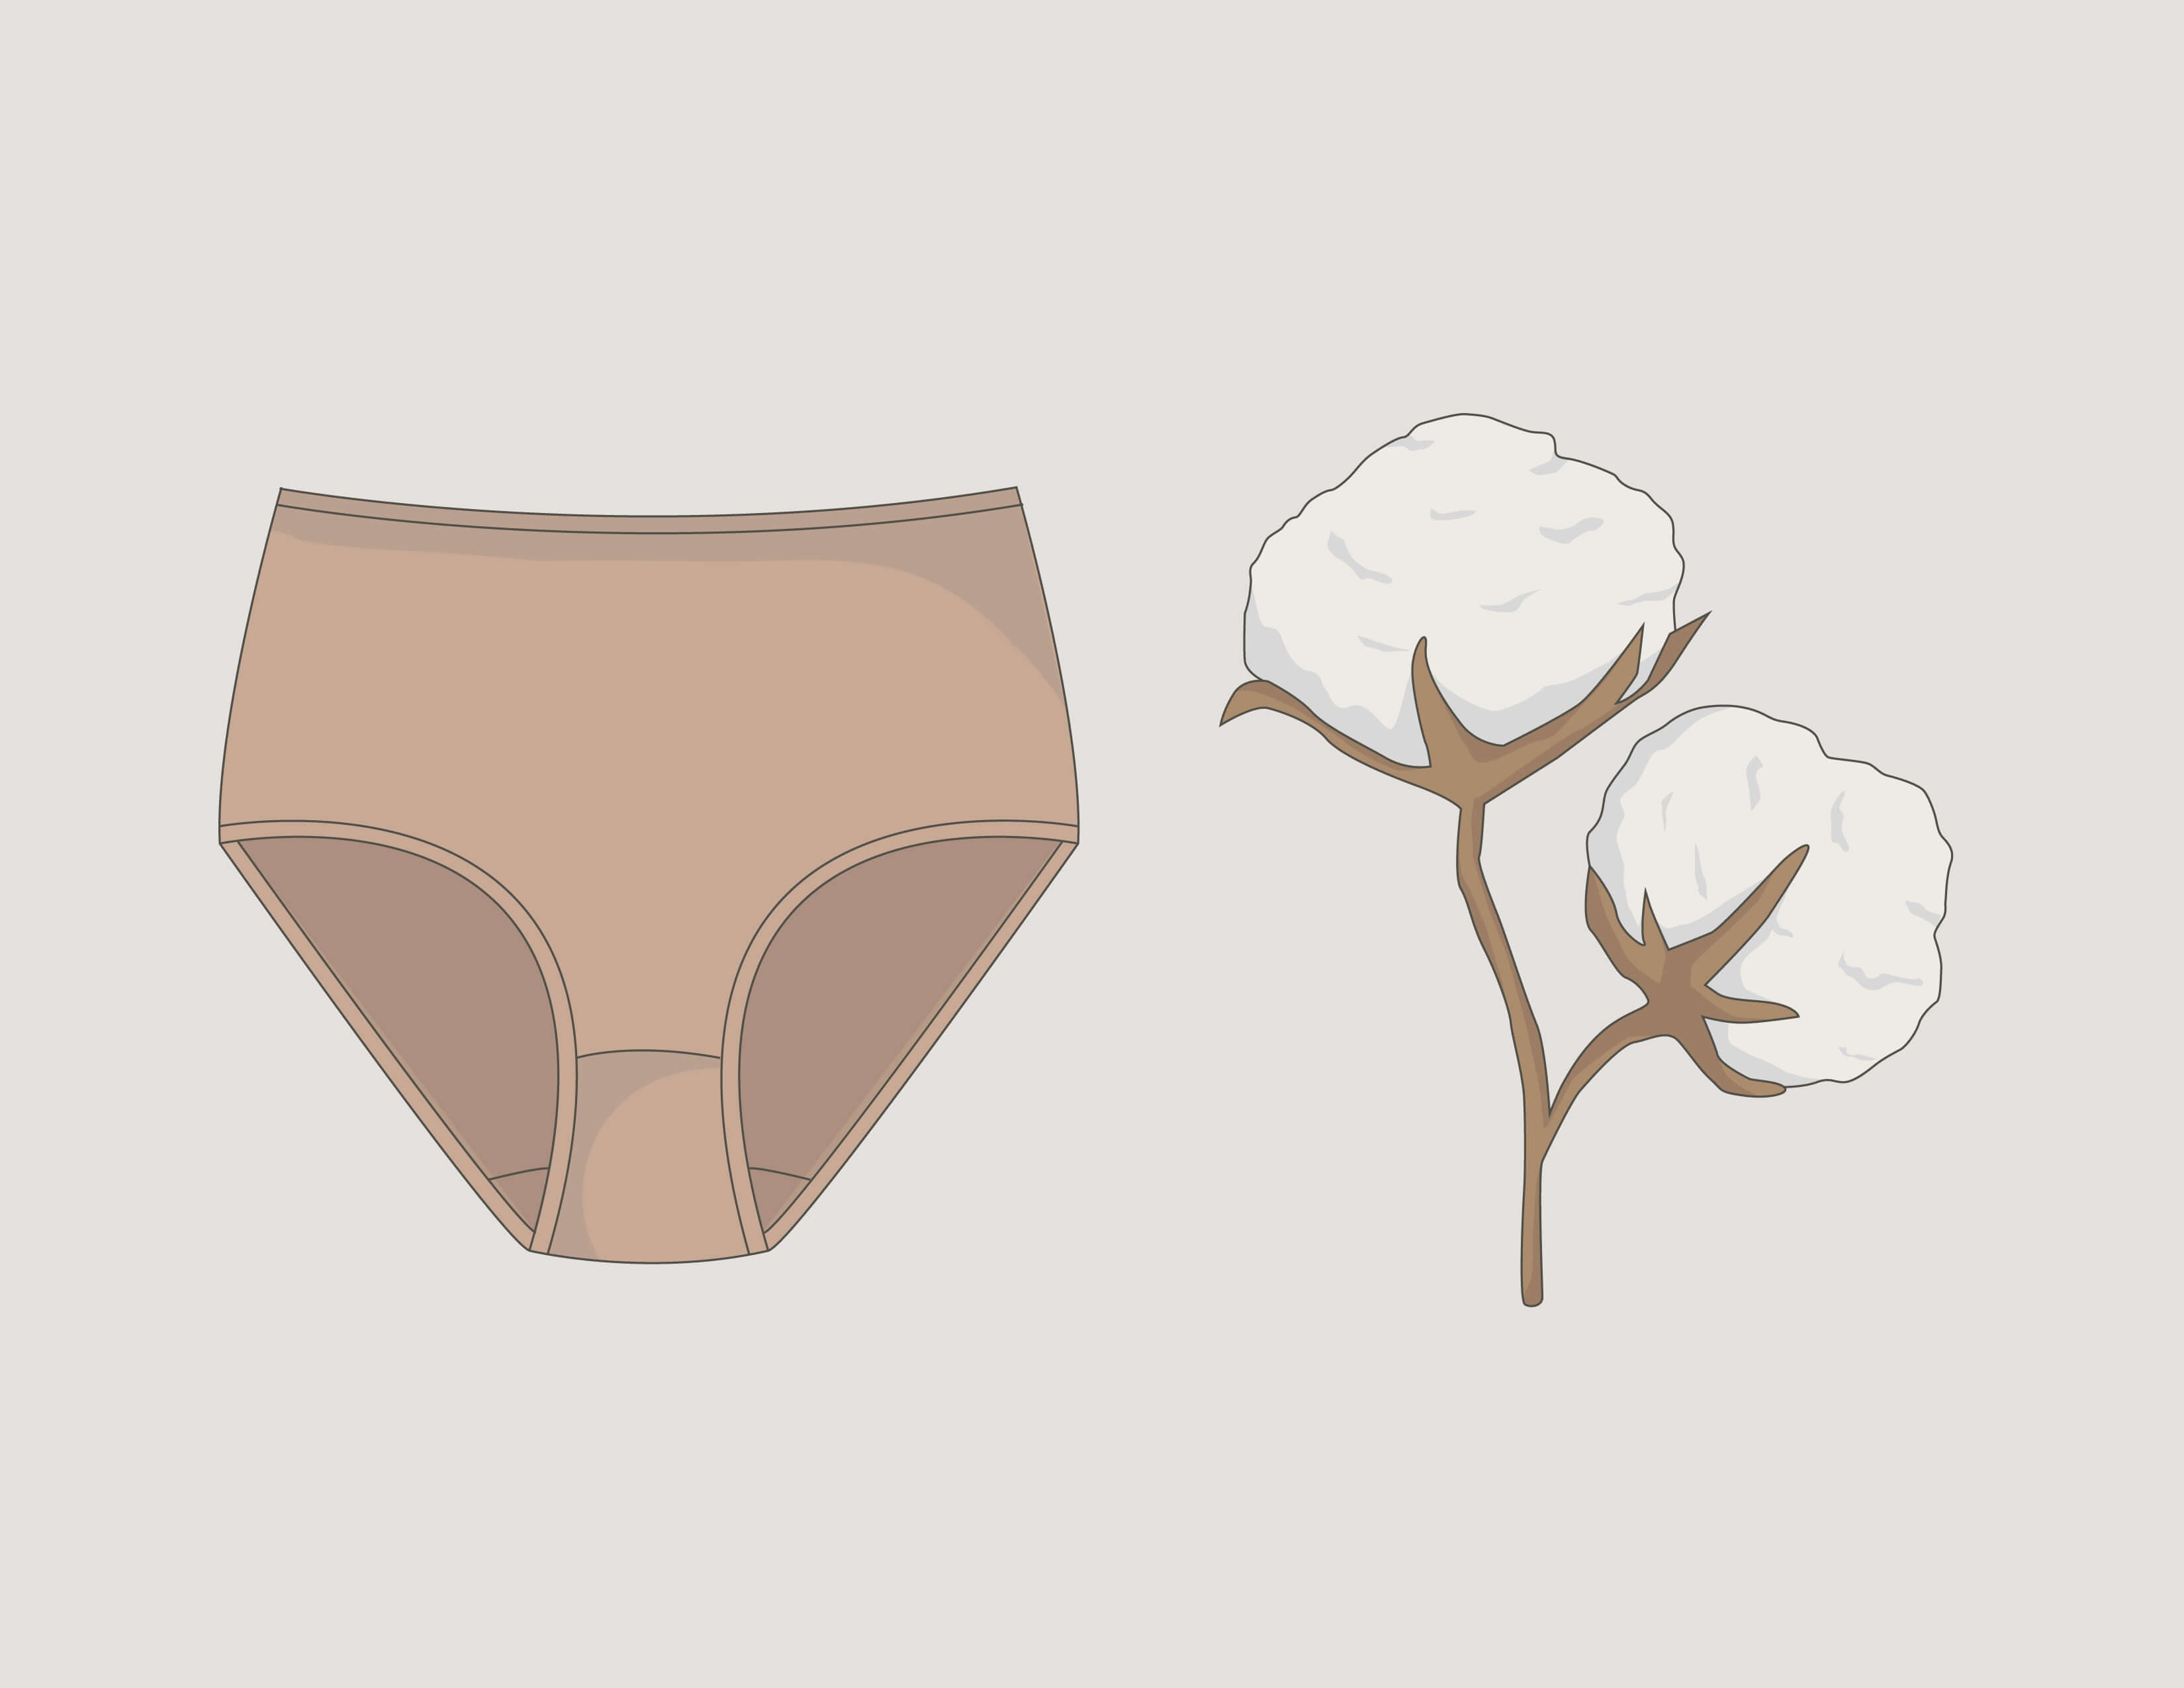 Women's underwear collections